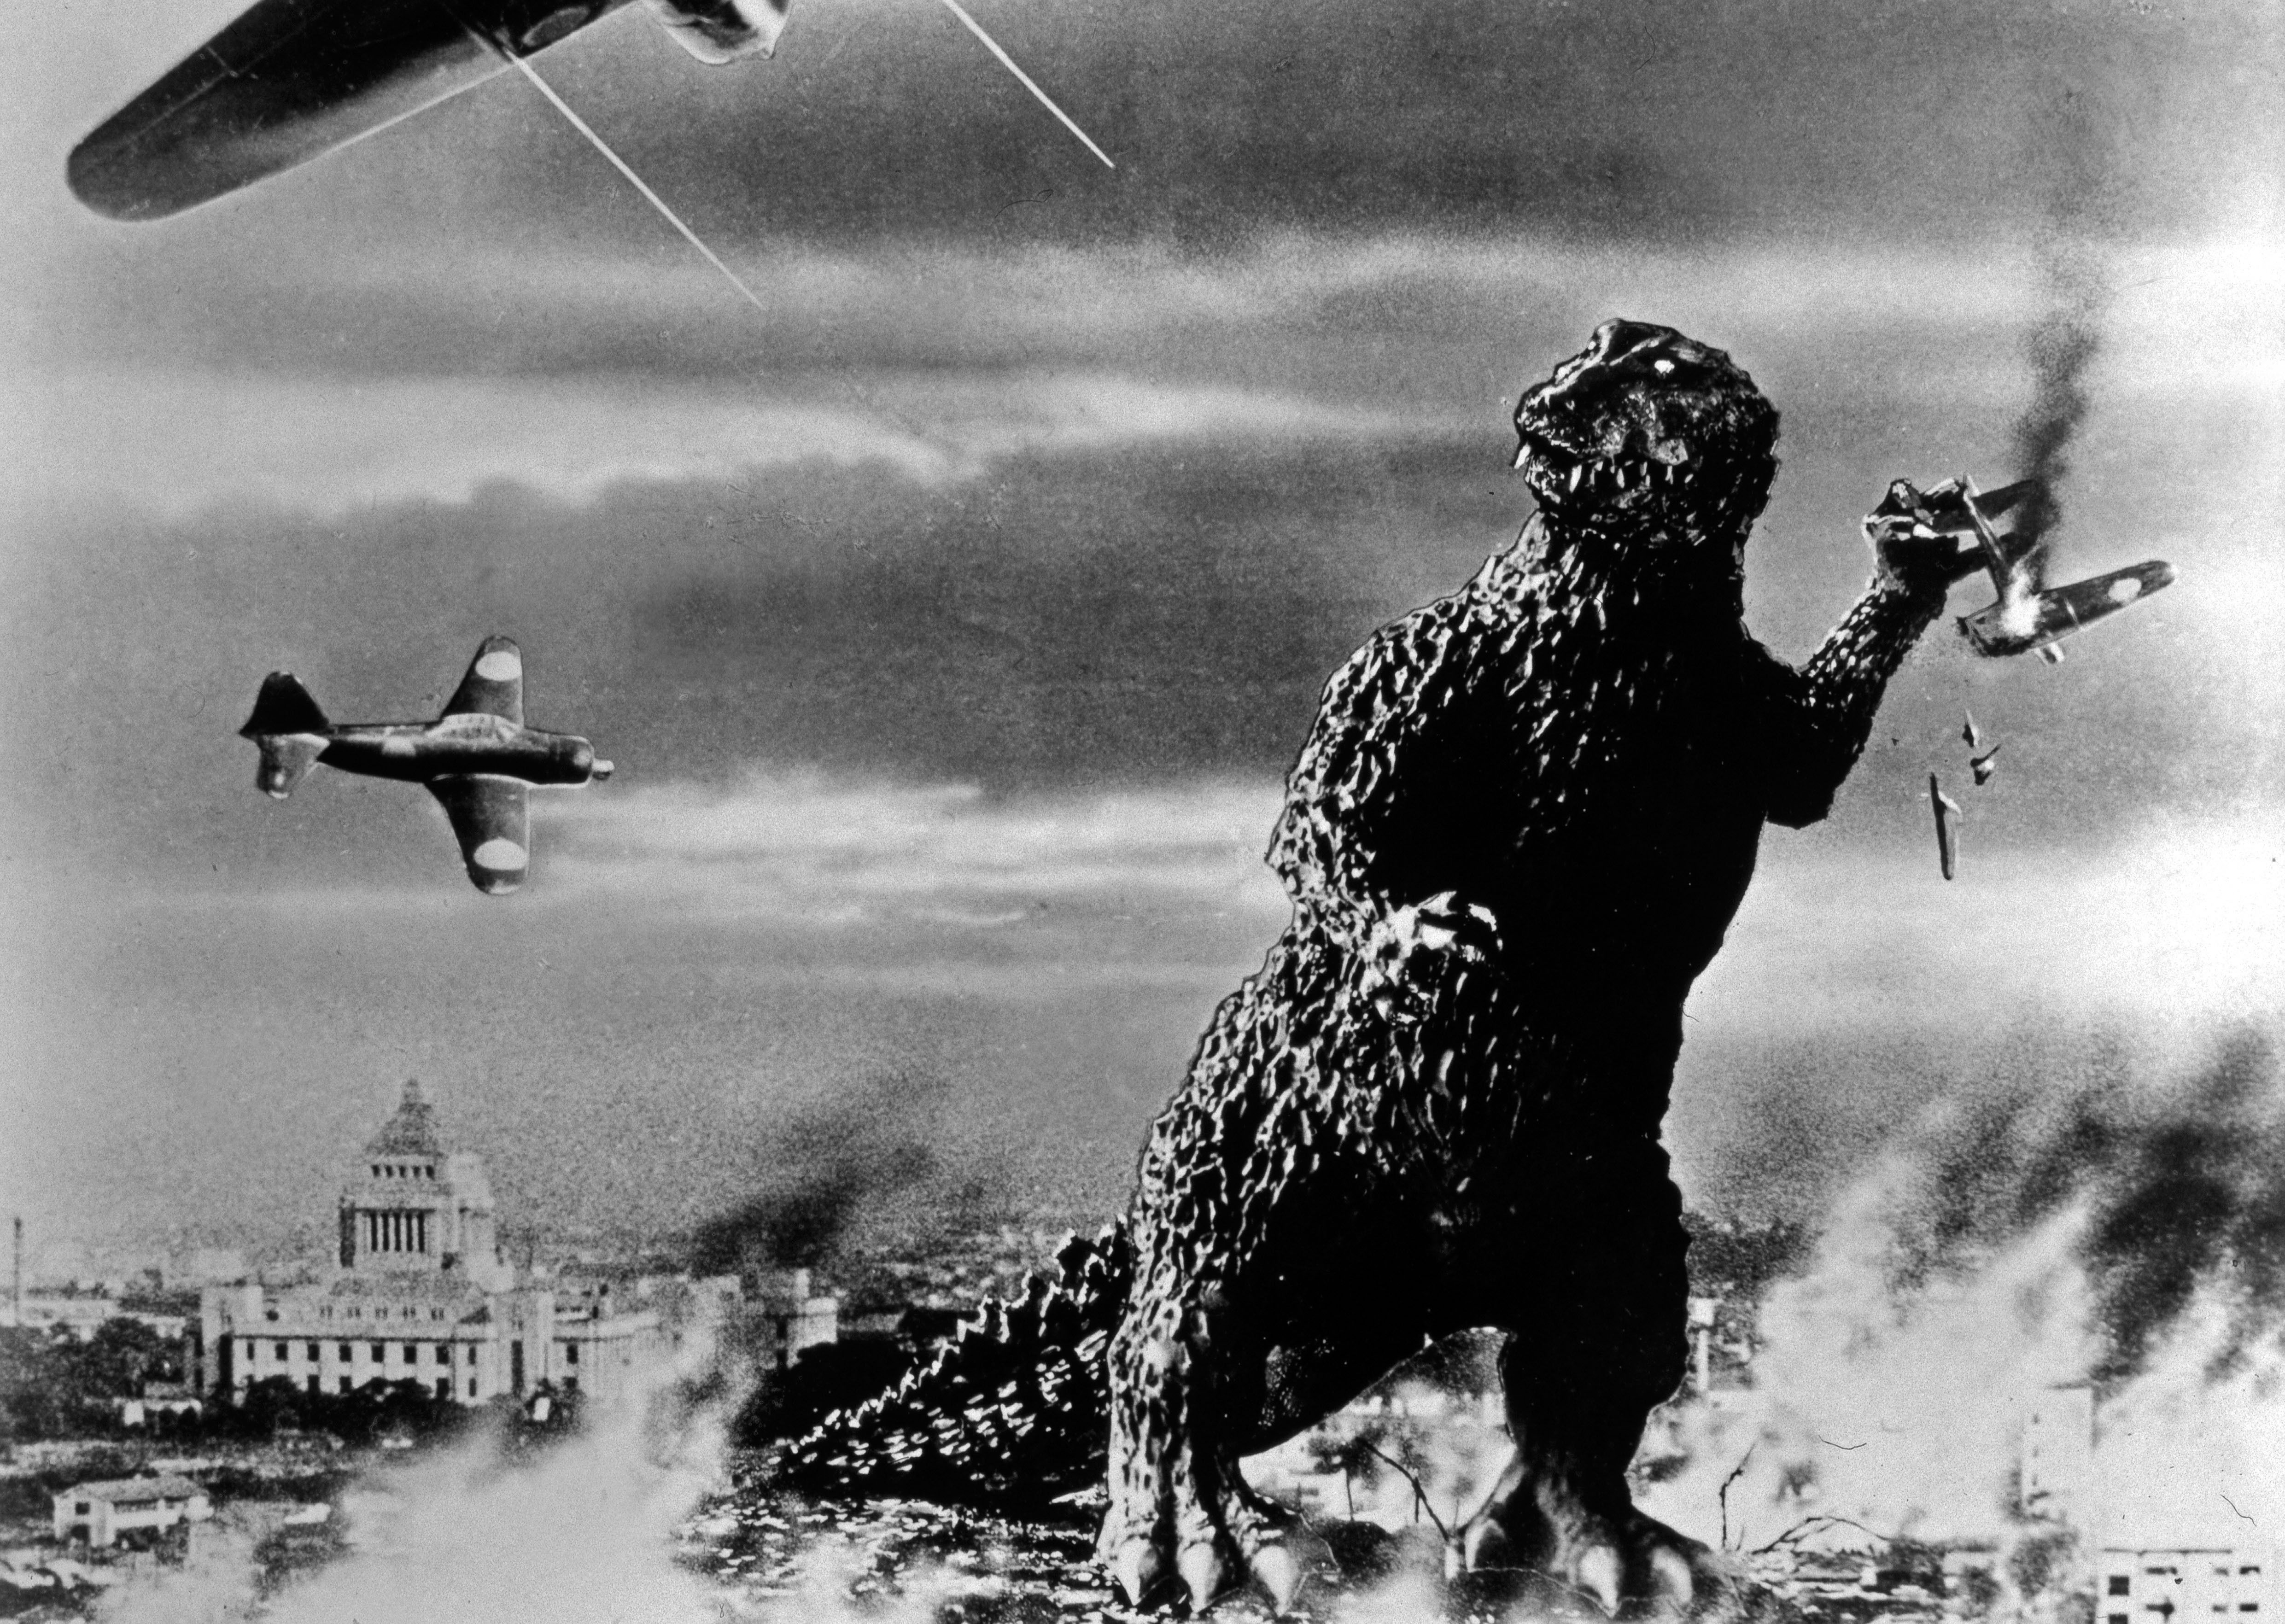 Der Original-Godzilla erscheint 1954 erstmals auf der Leinwand. Die Riesenechse wird noch ganz ohne Computeranimation, mithilfe der Suitmation-Technik dargestellt.